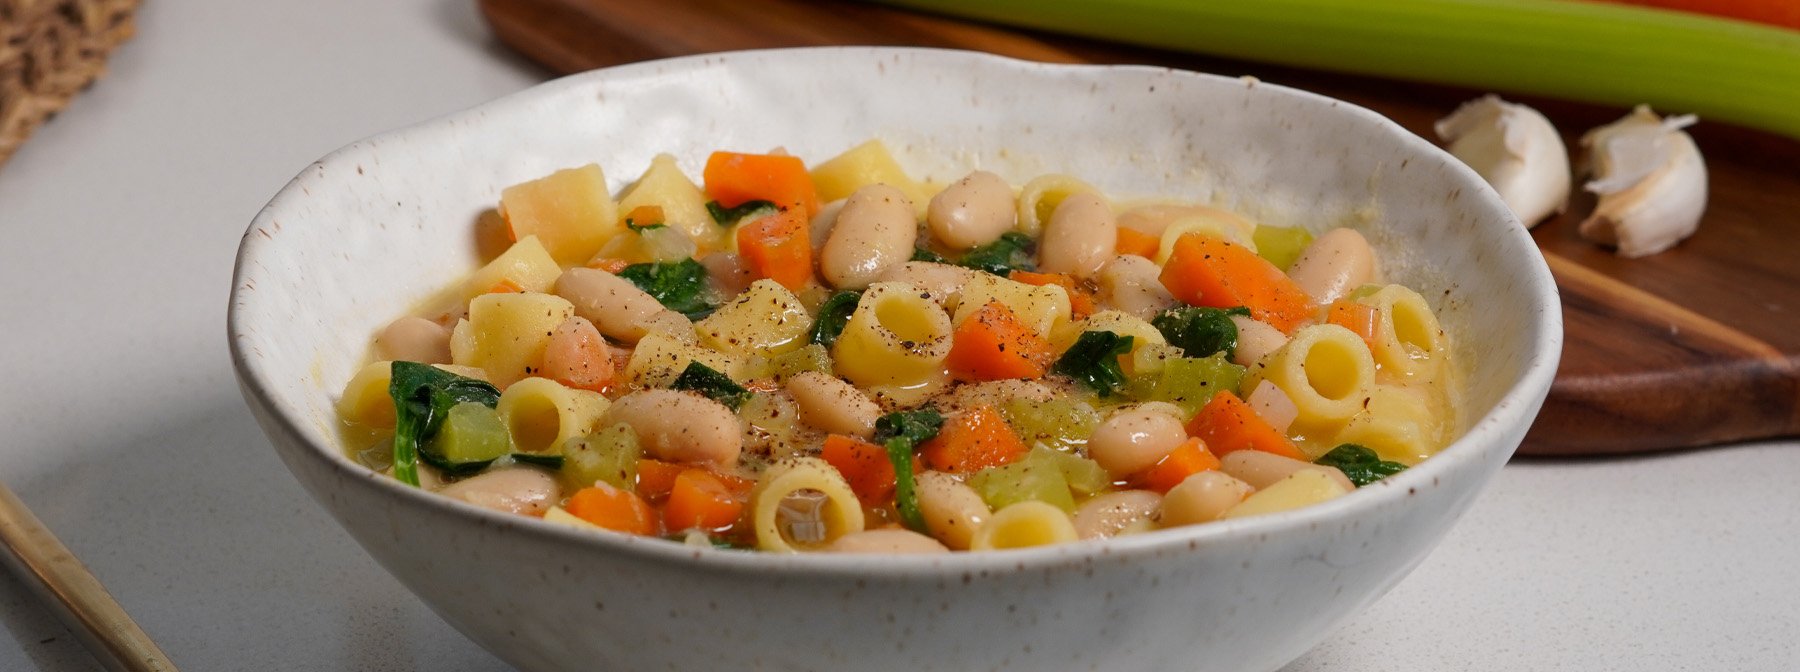 Sopa de verduras con pasta